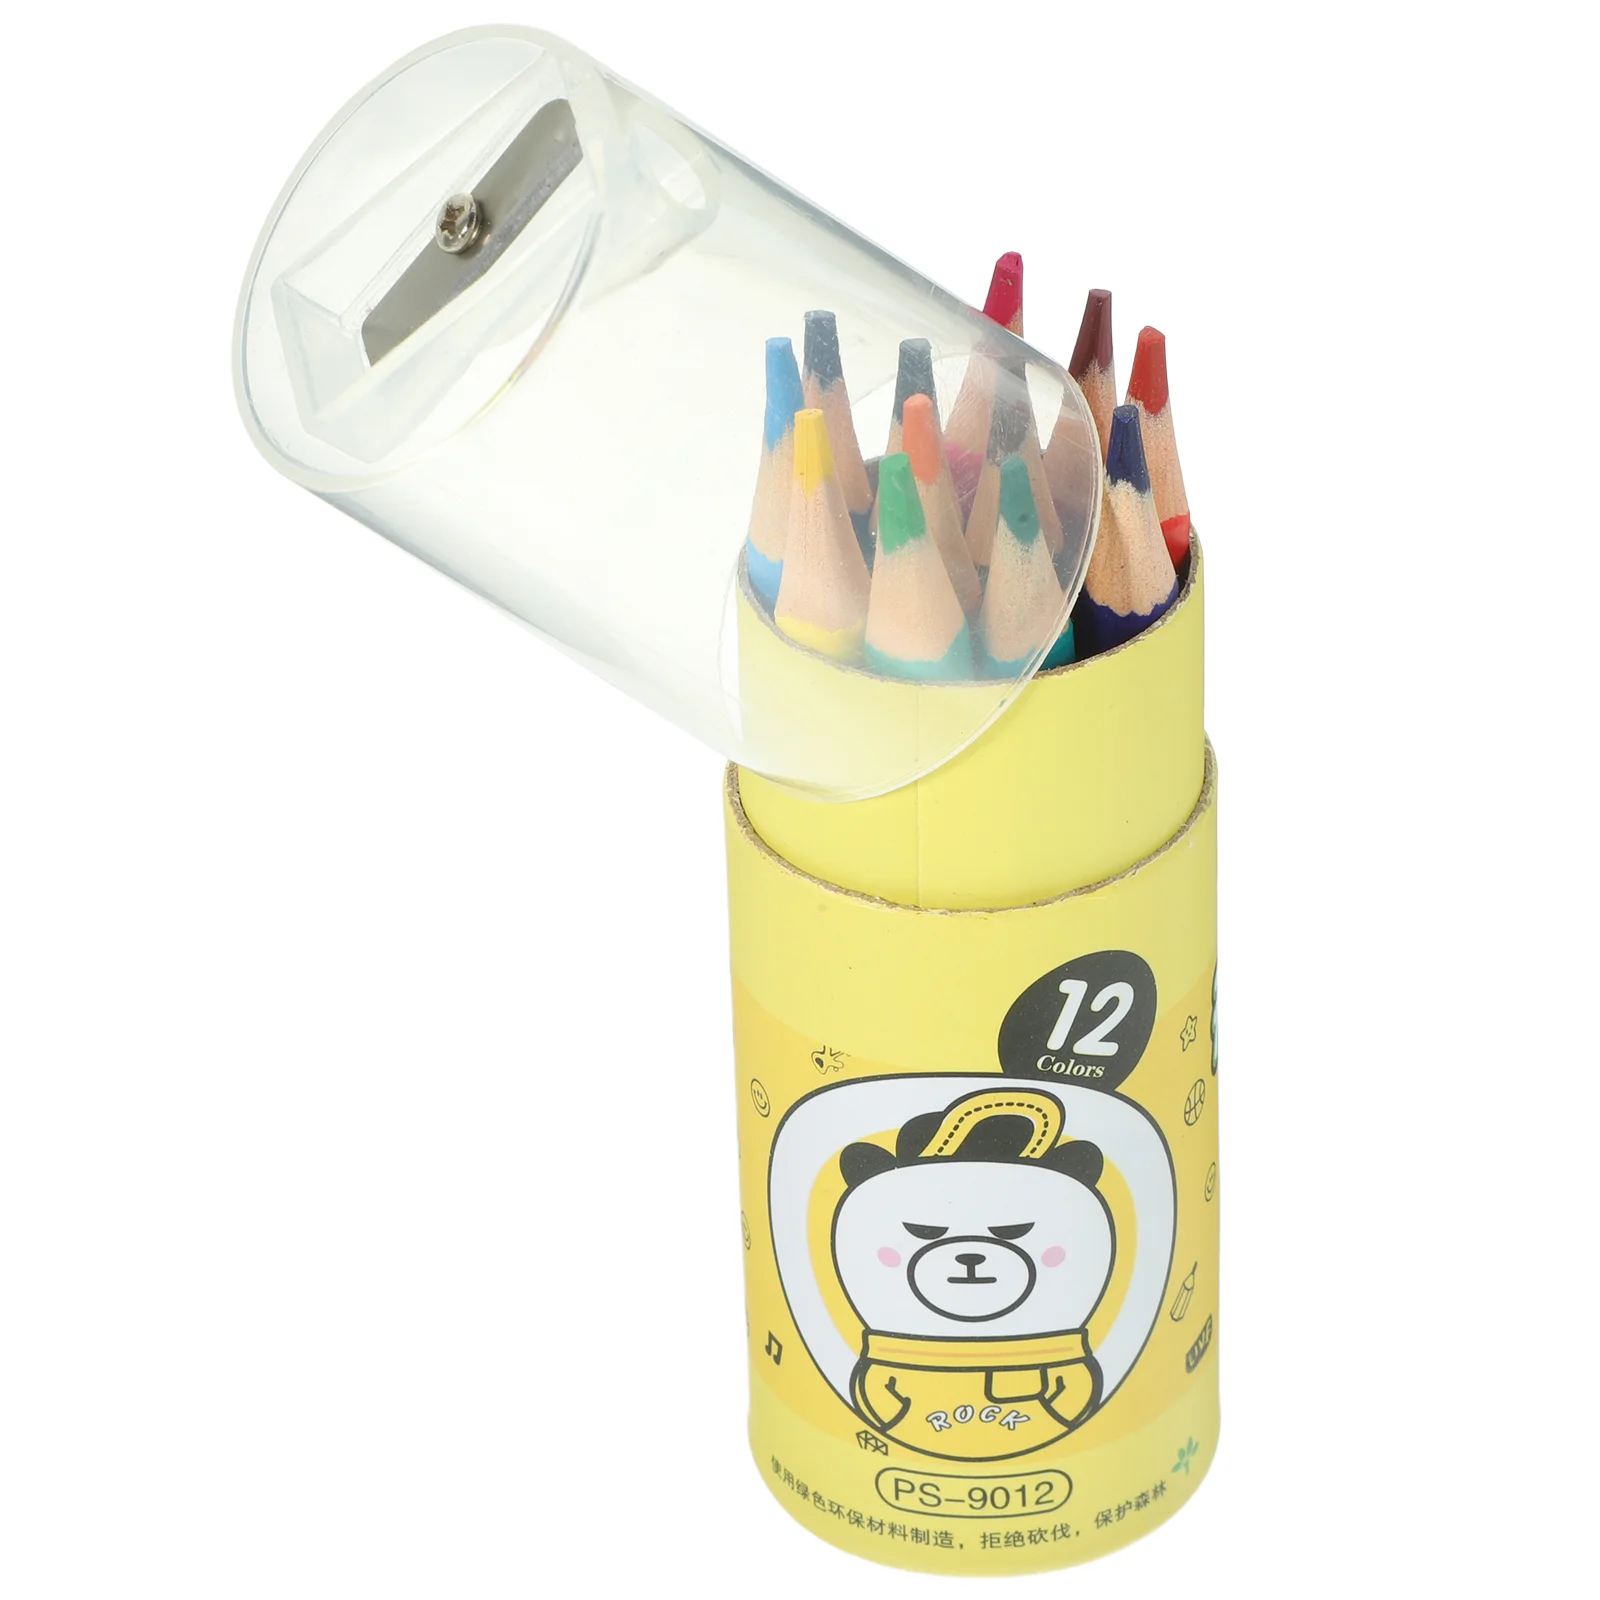 

1 Box of Adorable Paint Pencils Bulk Student Themed Students Pencils Painting Colored Pencils Set(12Pcs)